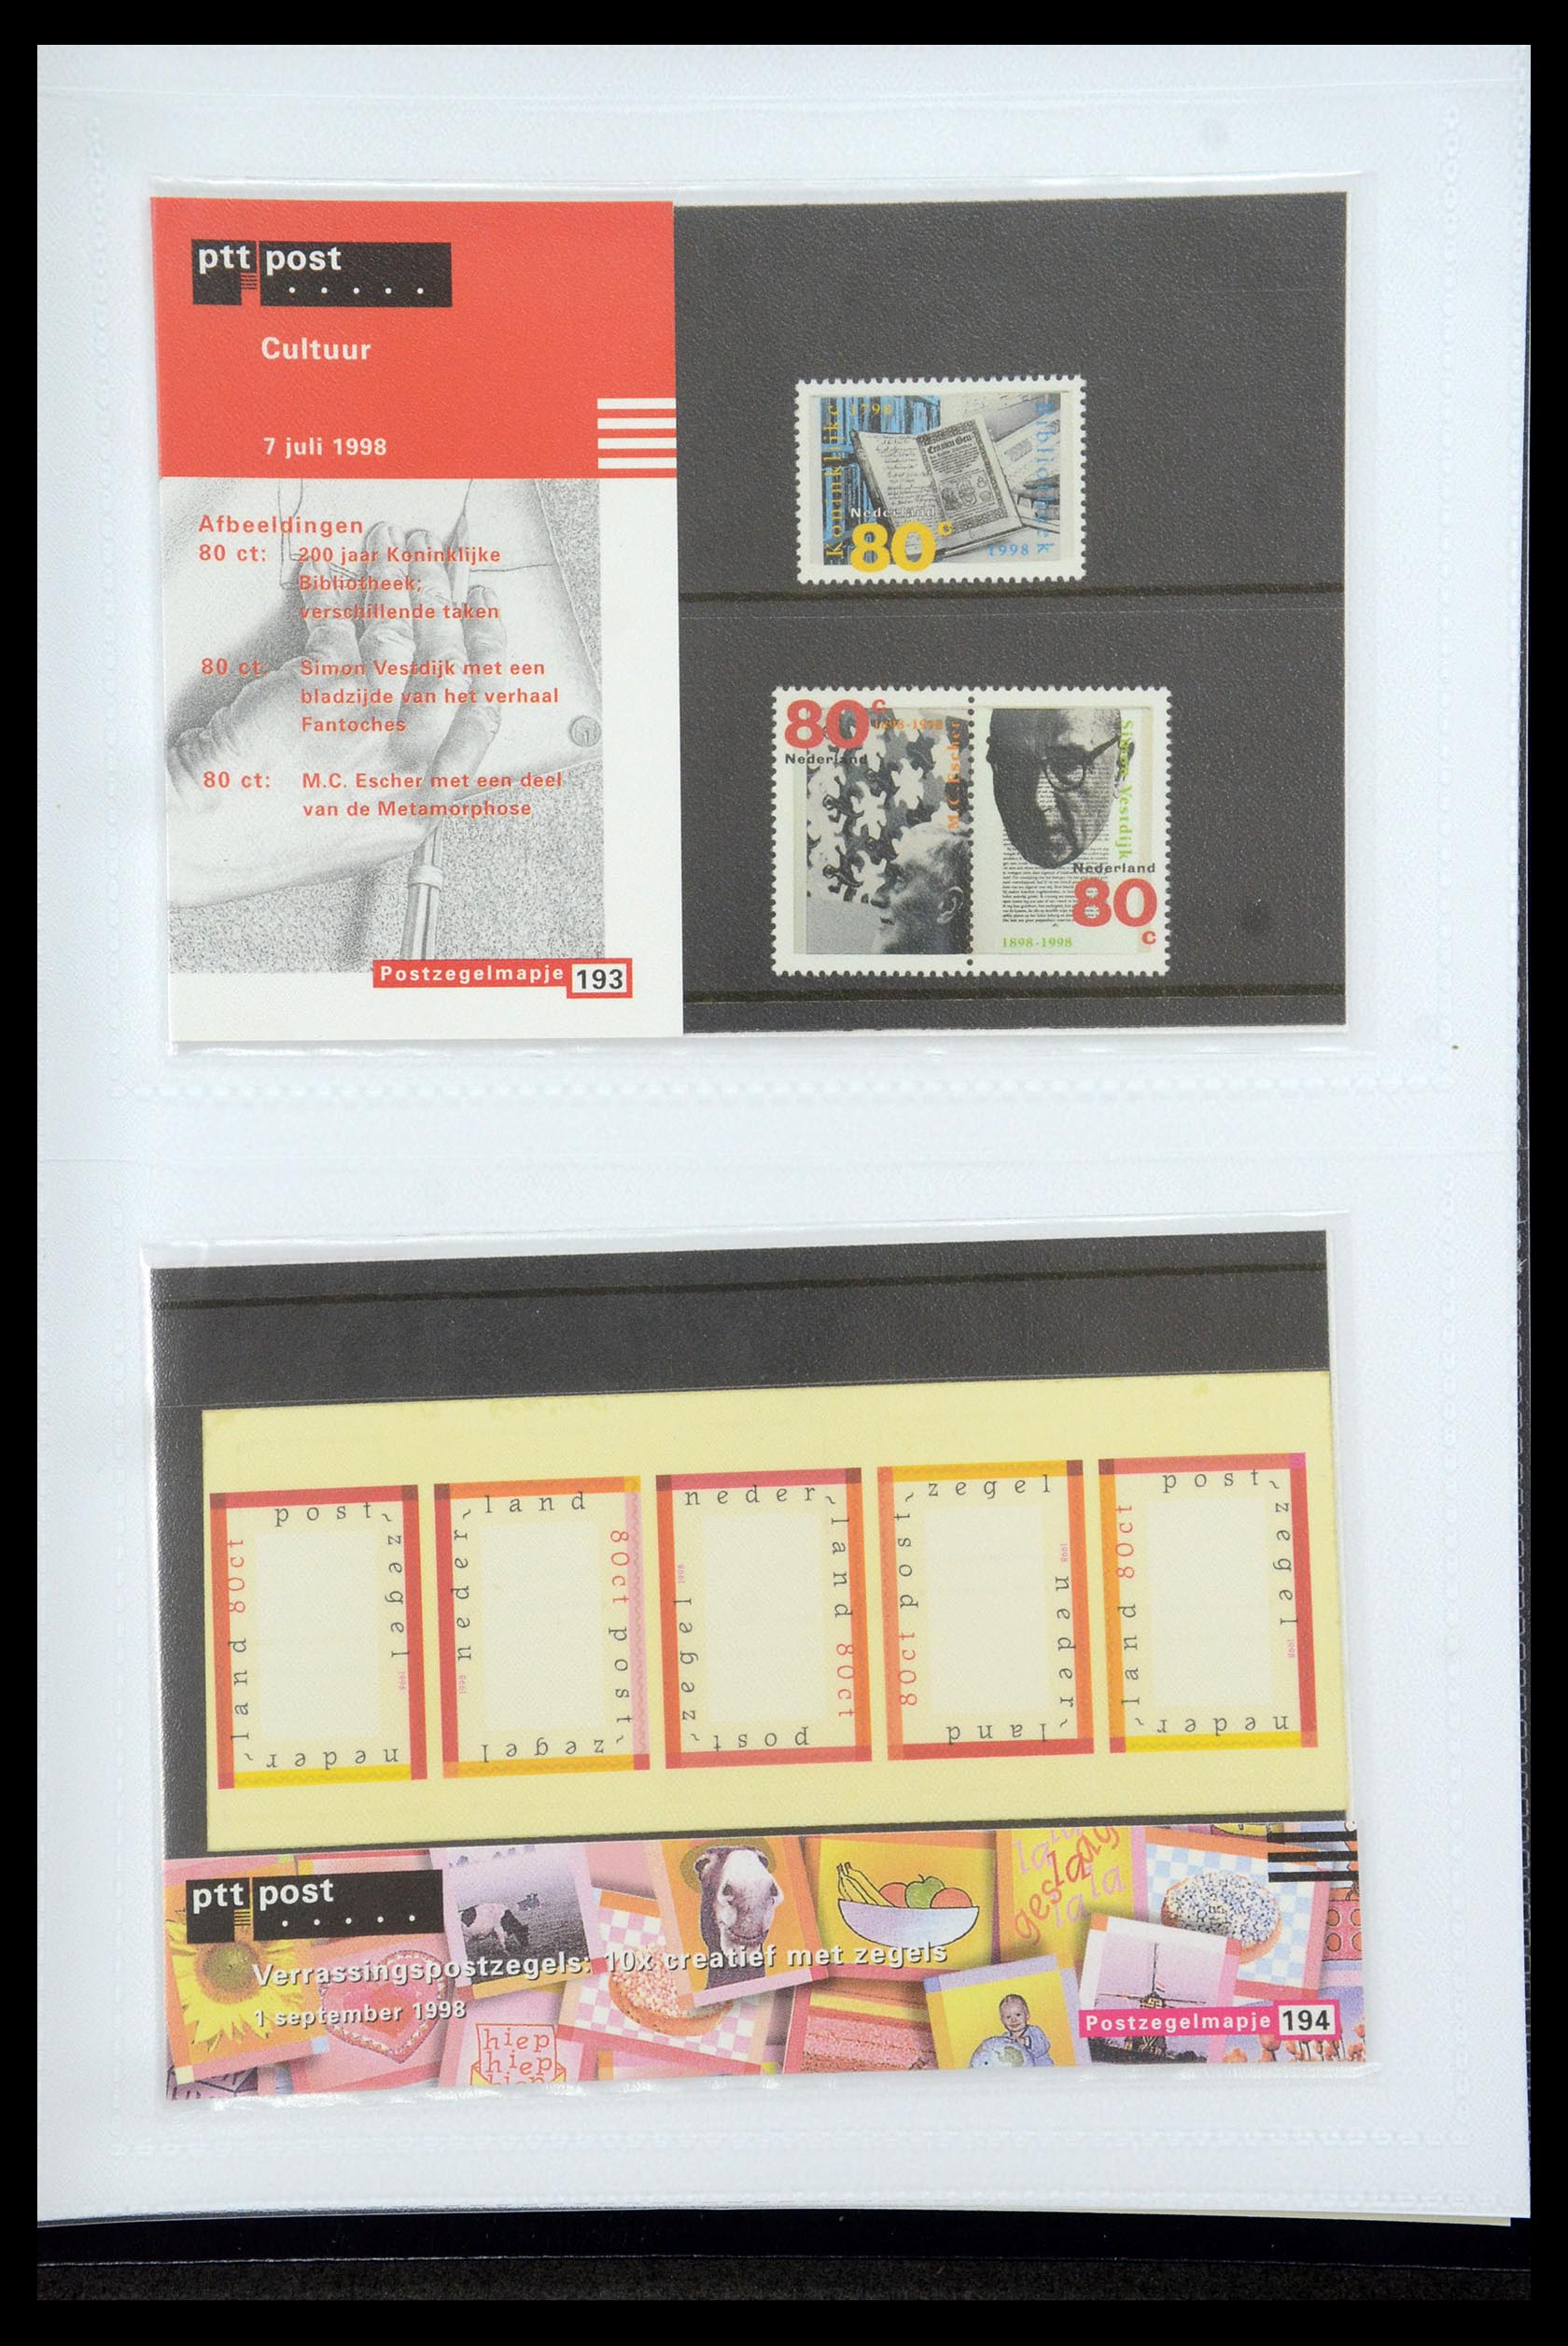 35947 100 - Stamp Collection 35947 Netherlands PTT presentation packs 1982-2019!